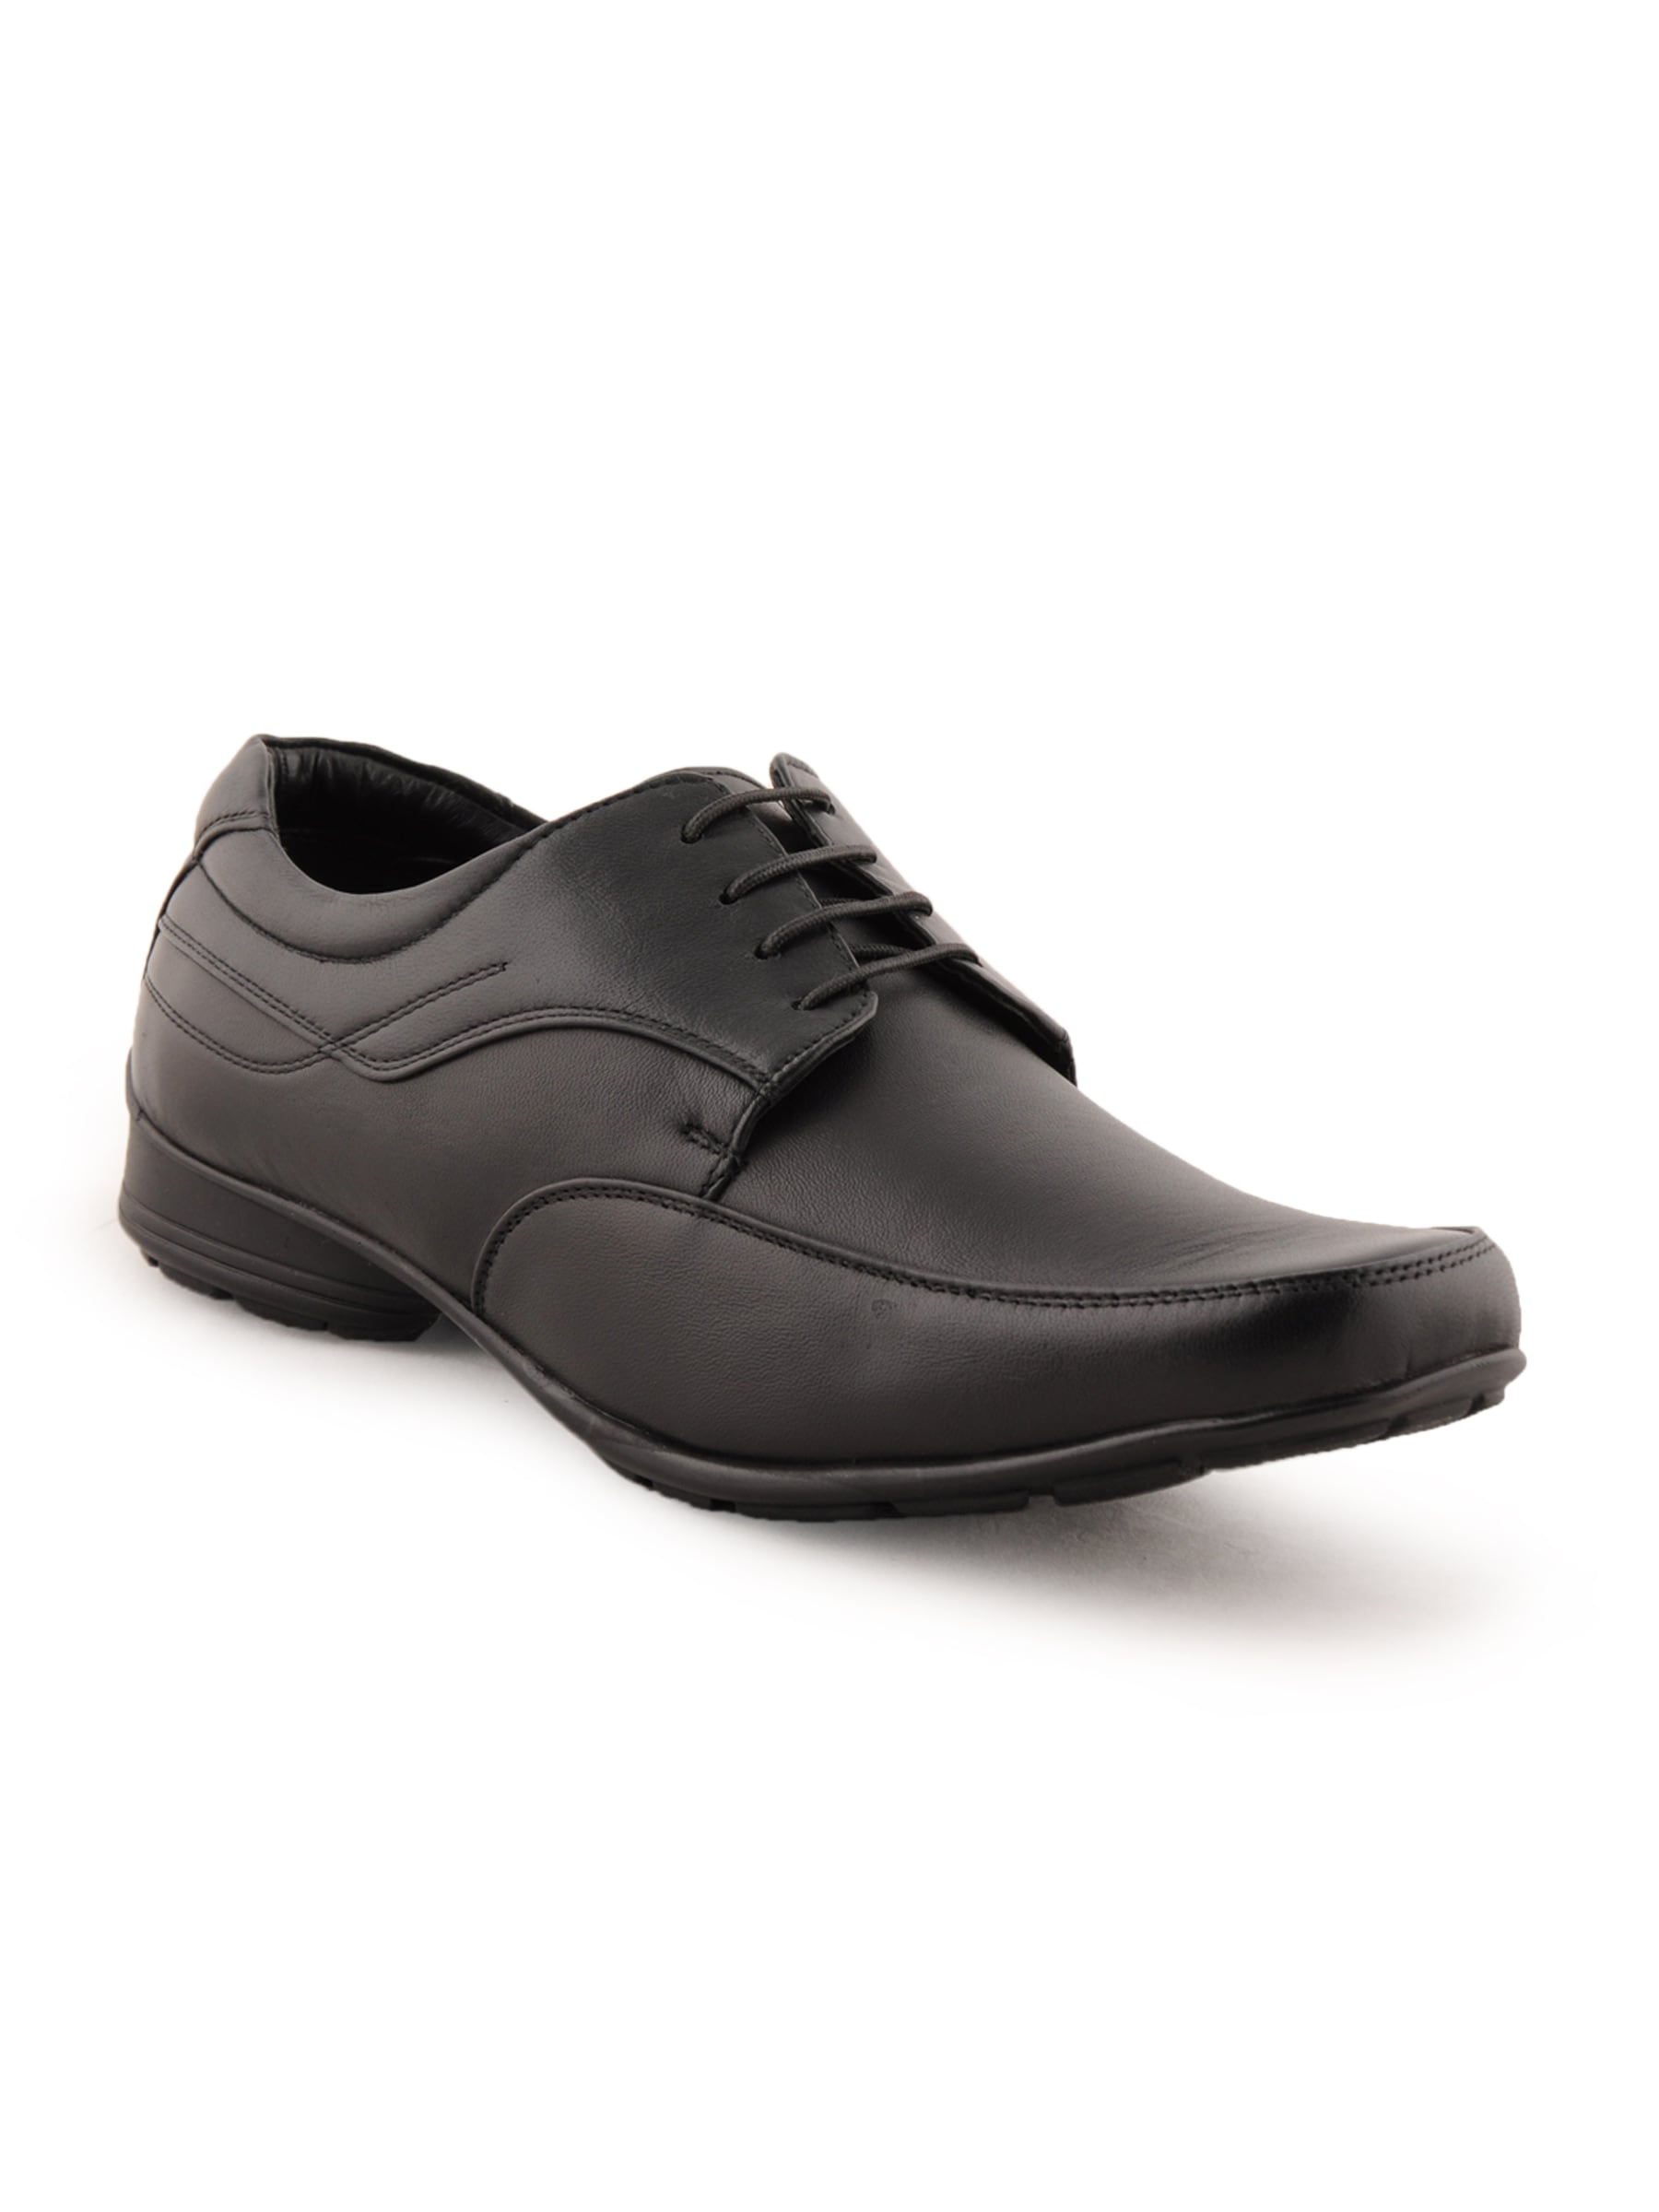 Franco Leone Men Formal Black Formal Shoes